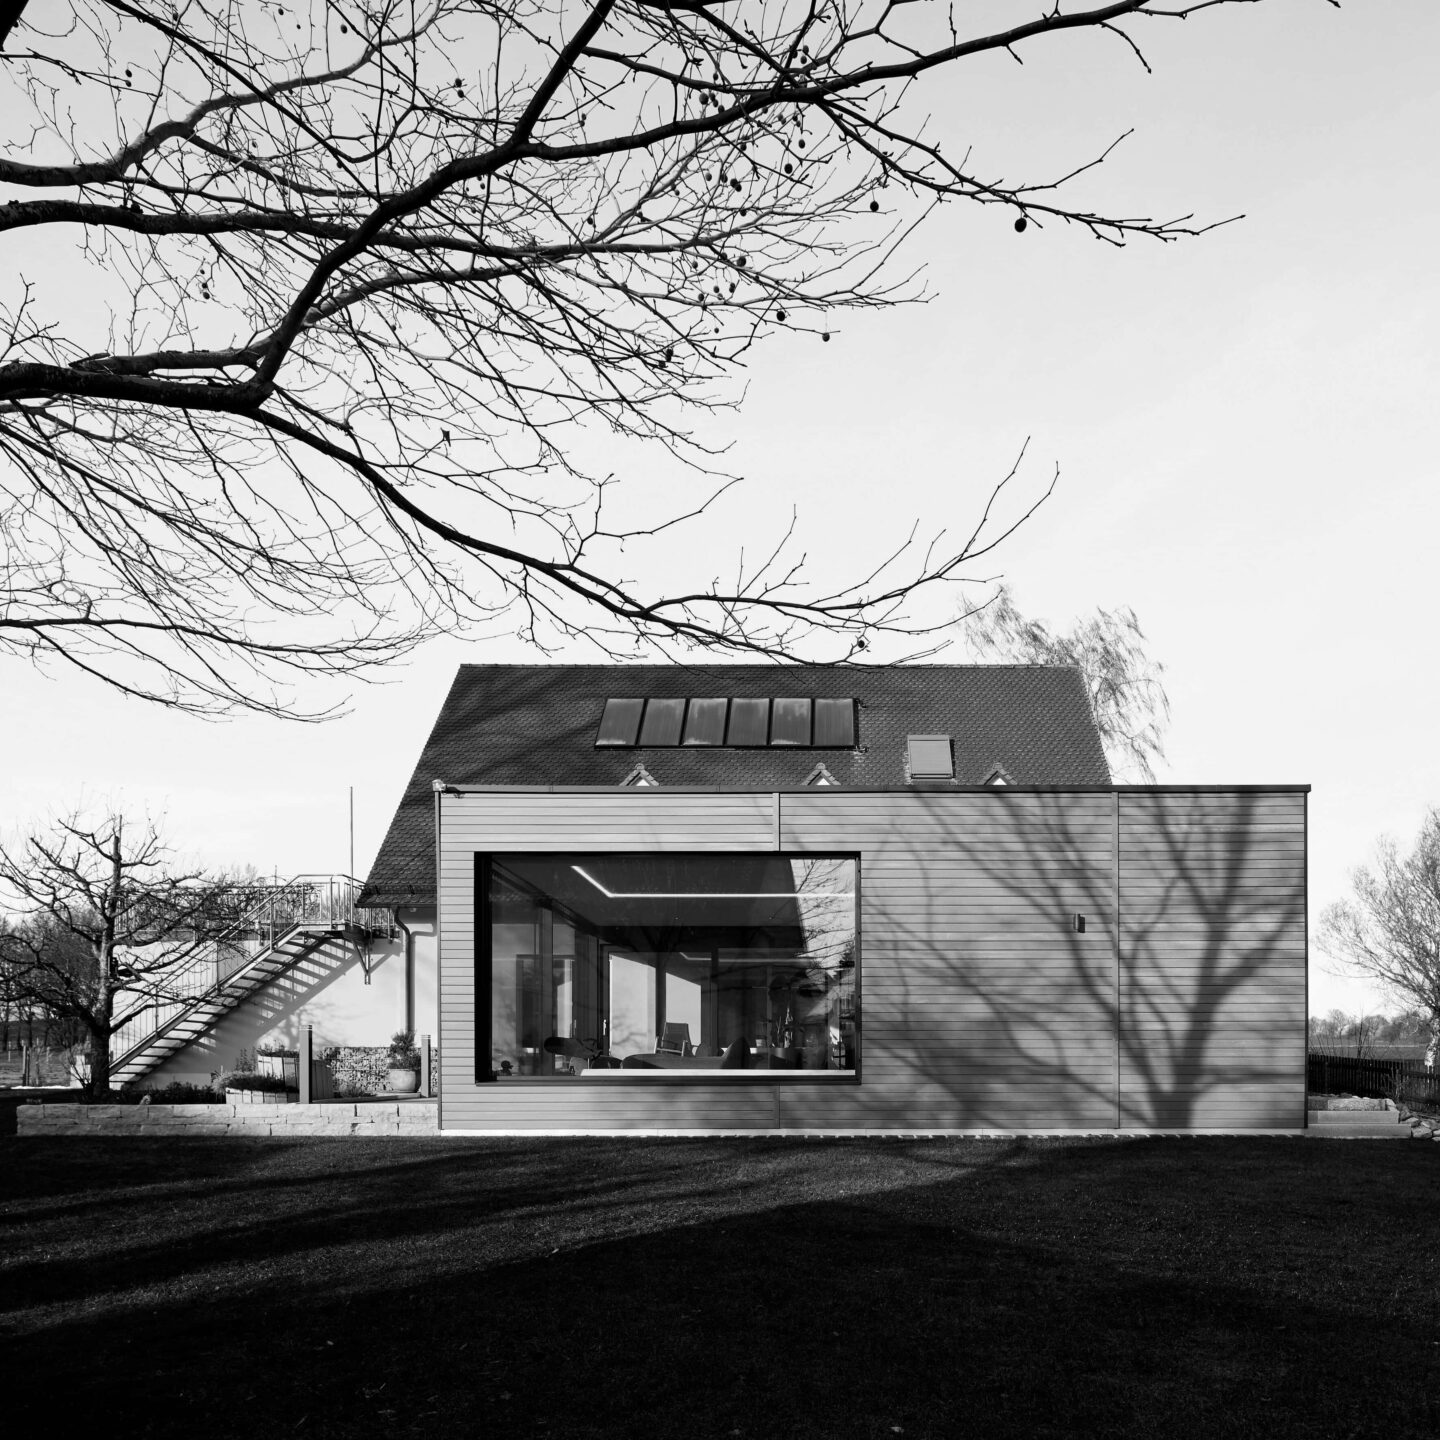 schwarz weiß Bild eines Einfamilienhauses mit angebautem Poolhaus